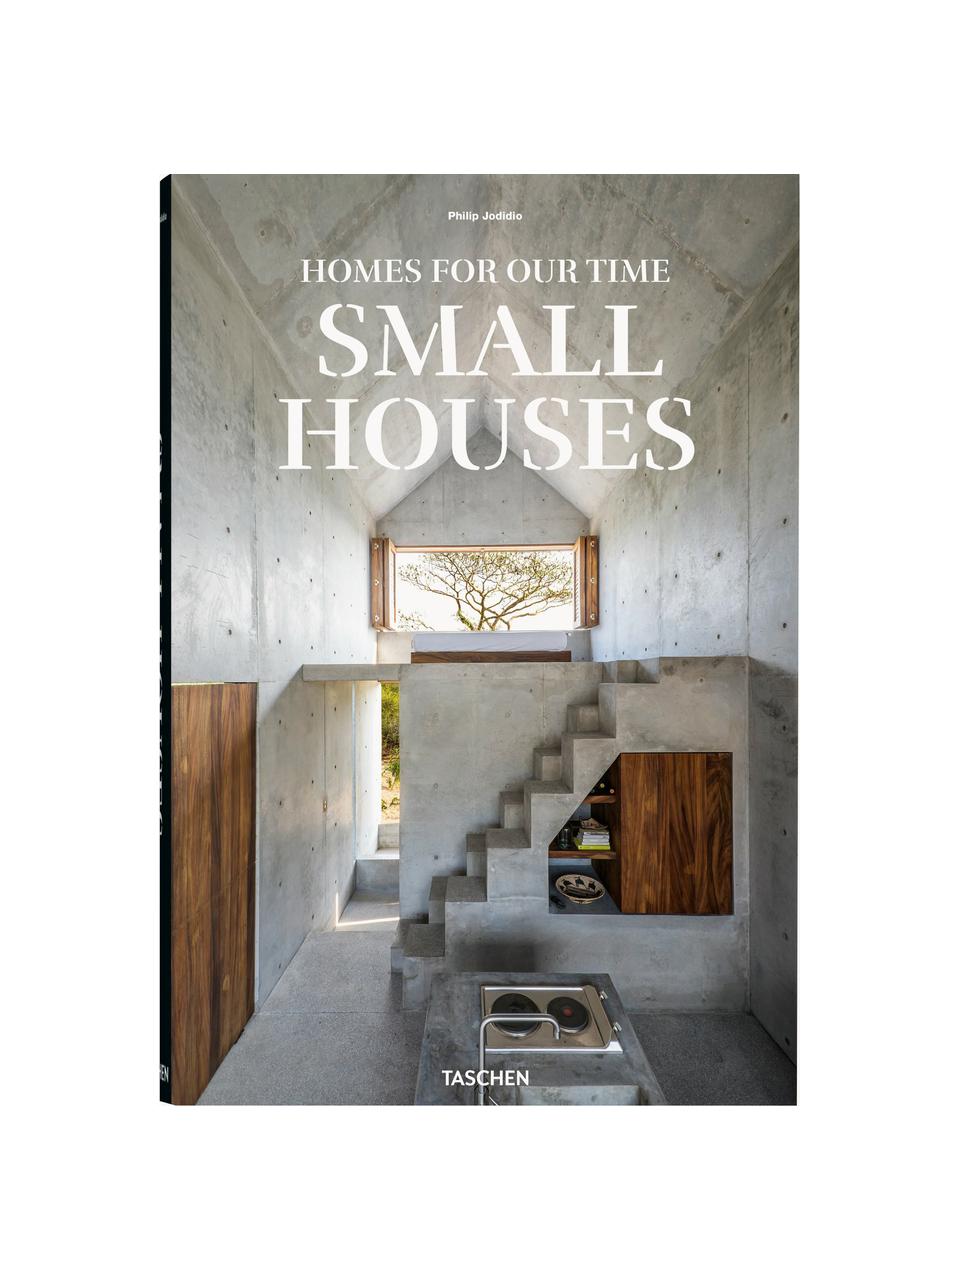 Obrázková kniha Homes for our Time - Small House, Papír, pevná vazba, Small Houses, Š 25 cm, V 37 cm